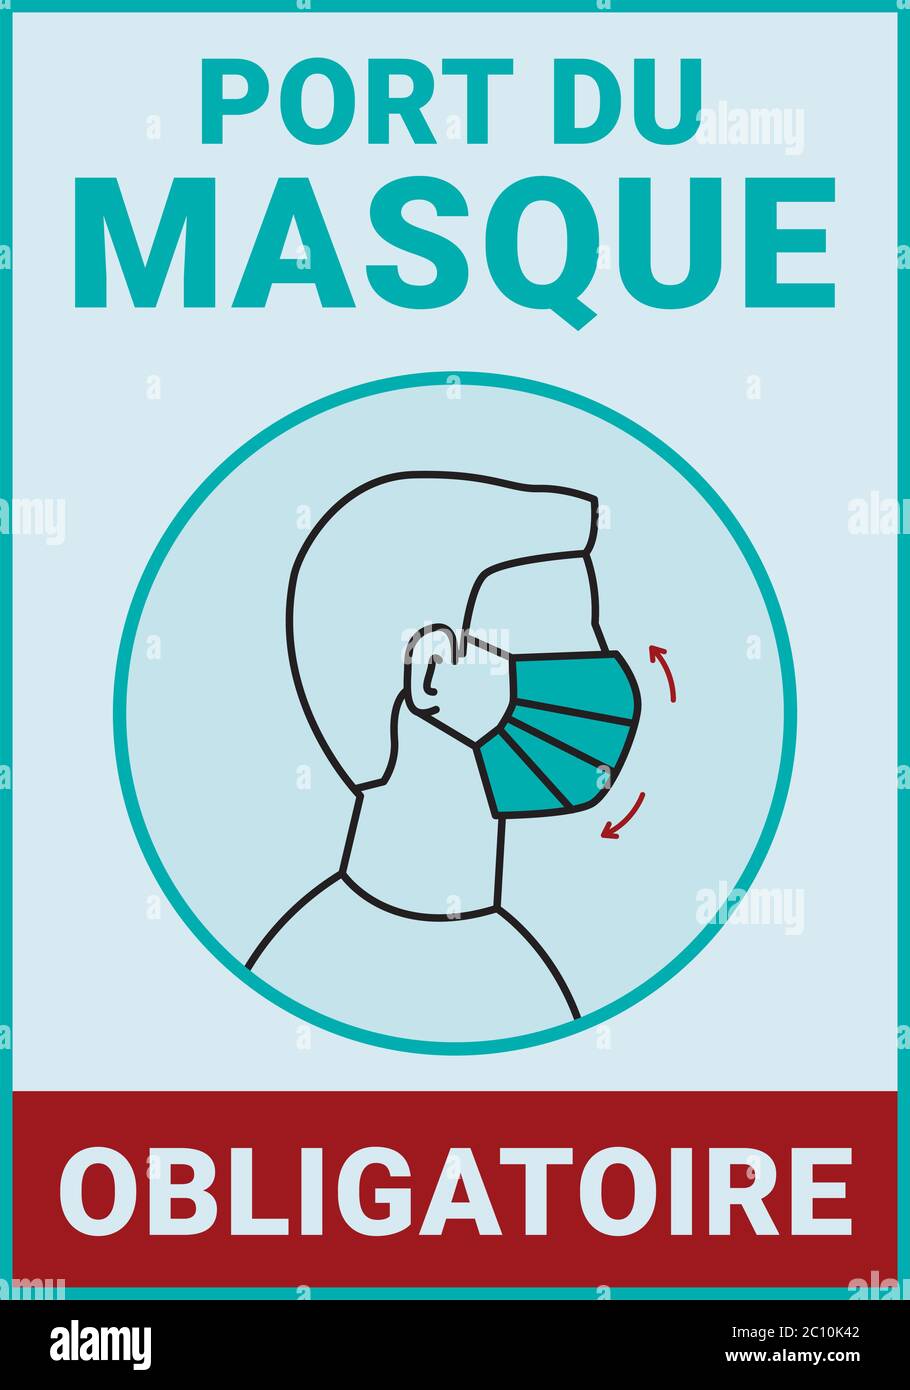 Pancarte d'affichage : port du masque obligatoire. Covid-19. Traduction:  'Le port du masque est obligatoire' Image Vectorielle Stock - Alamy